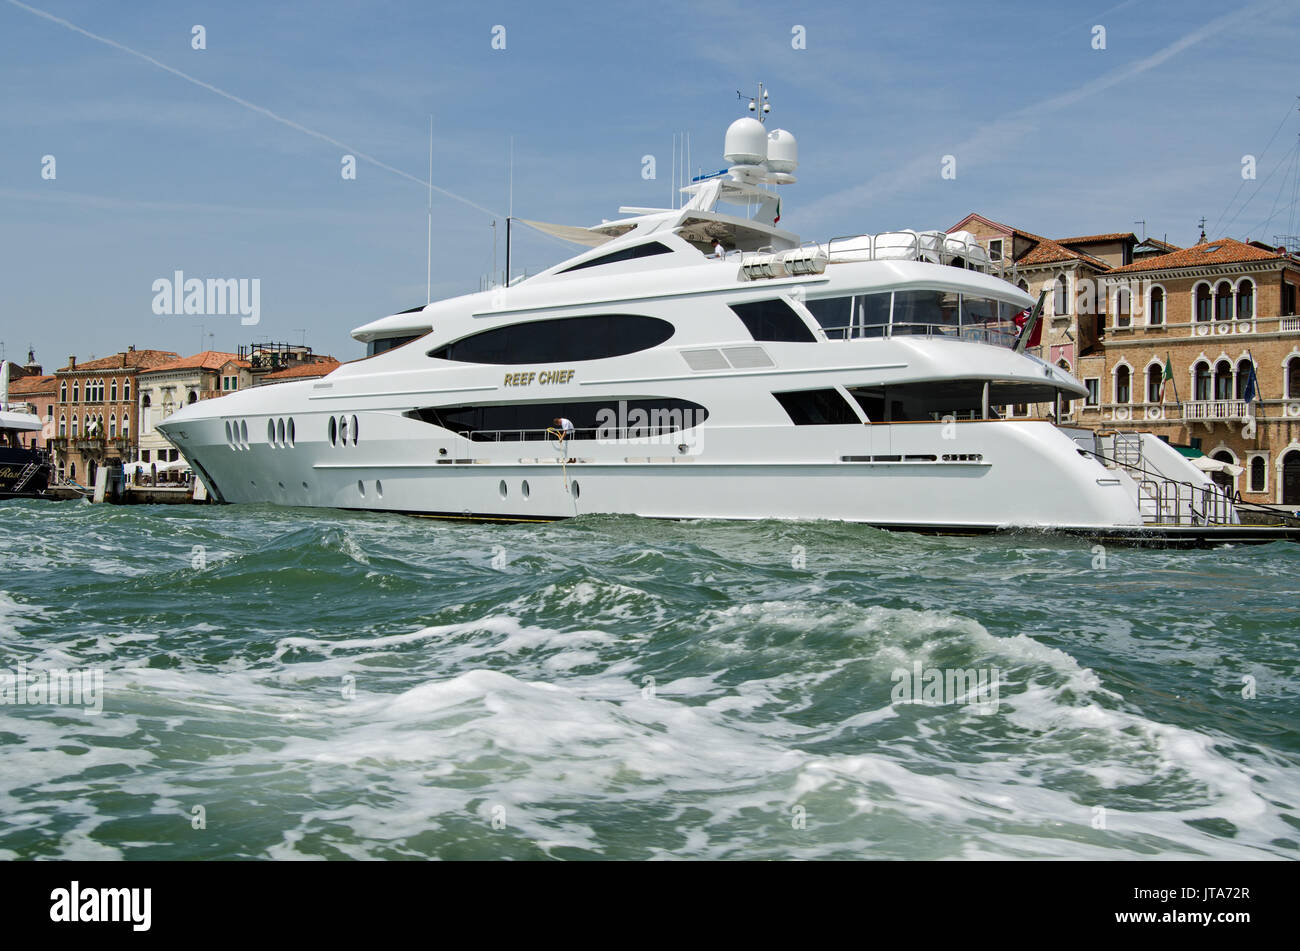 Venedig, Italien, 10. Juni 2017: Die luxusyacht Reef Chief auf der Riva Schiavoni Dia an einem sonnigen Nachmittag in Venedig, Italien. Stockfoto